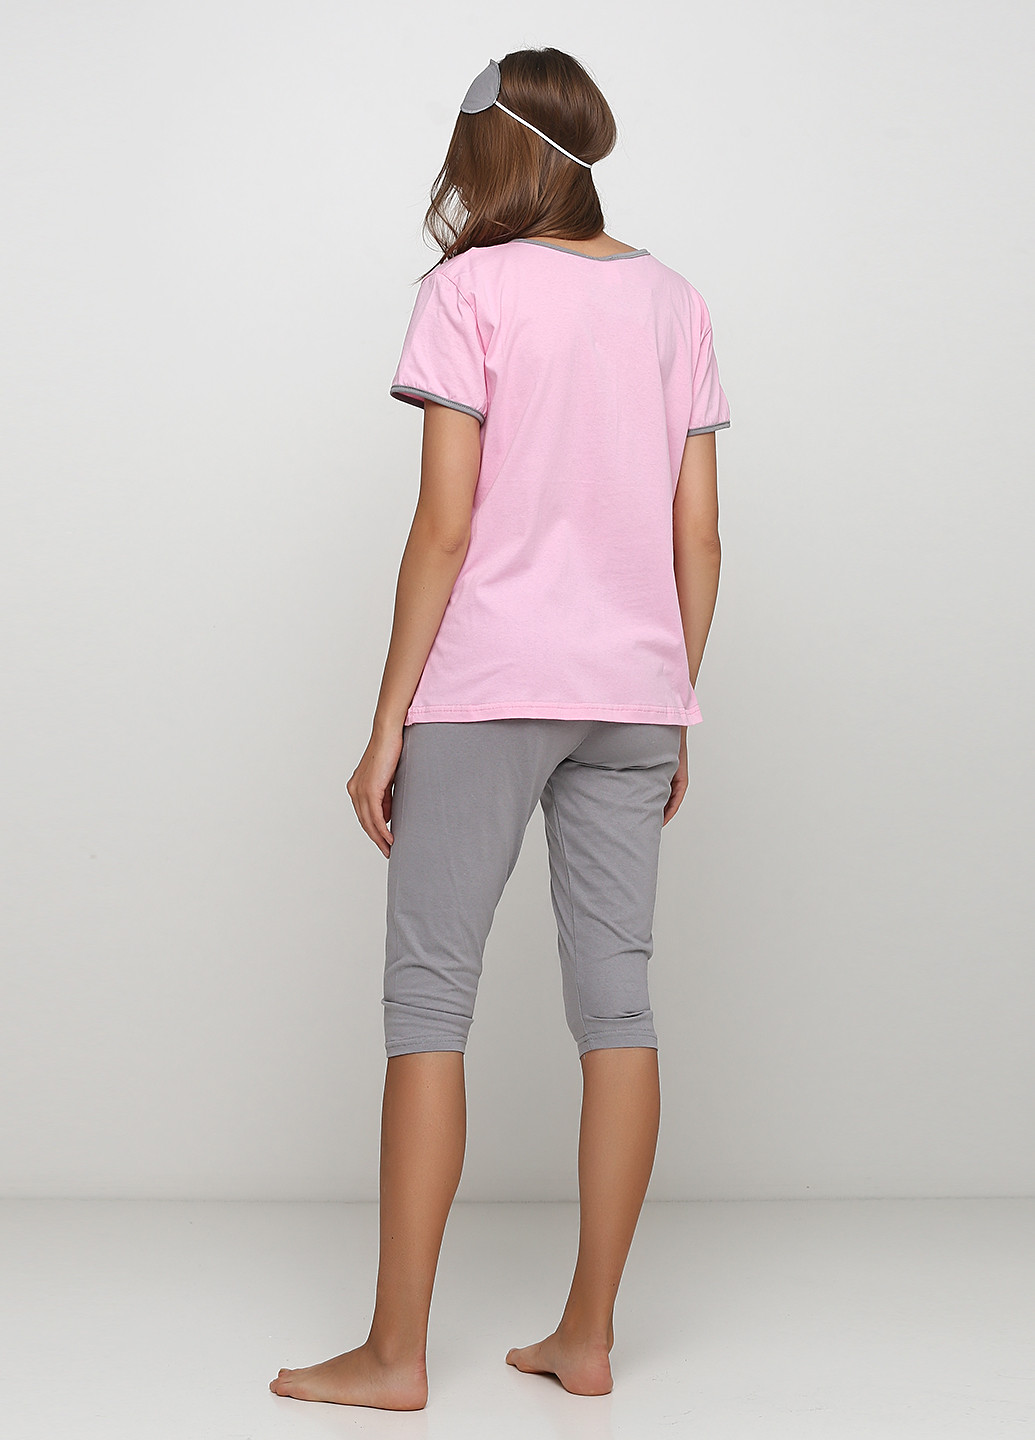 Розовый демисезонный комплект (футболка, бриджи, маска для сна) Трикомир